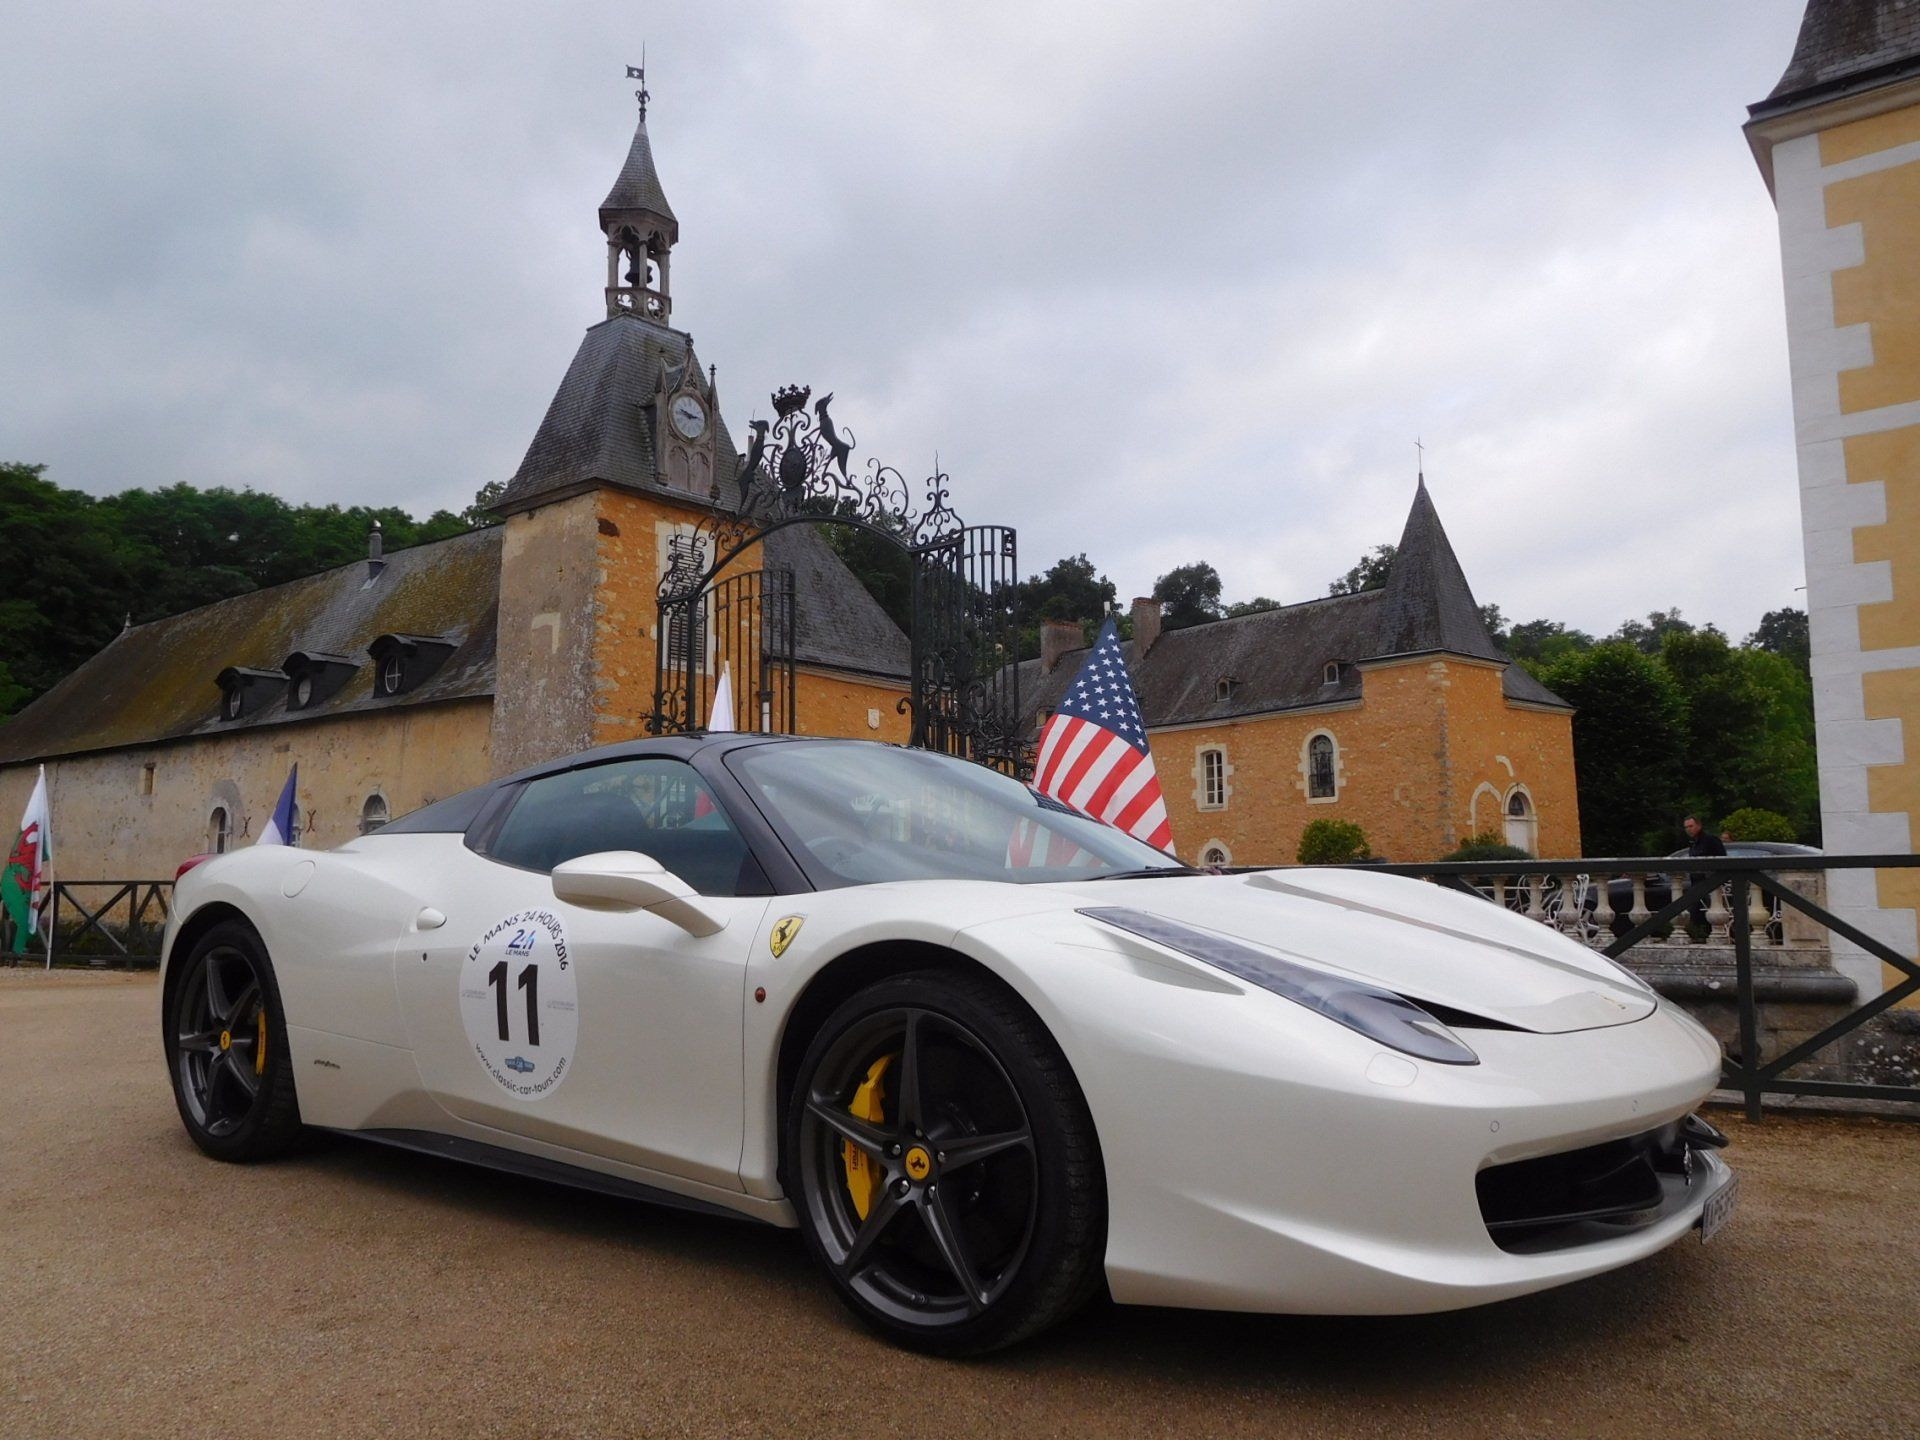 Ferrari at Chateau de Dobert